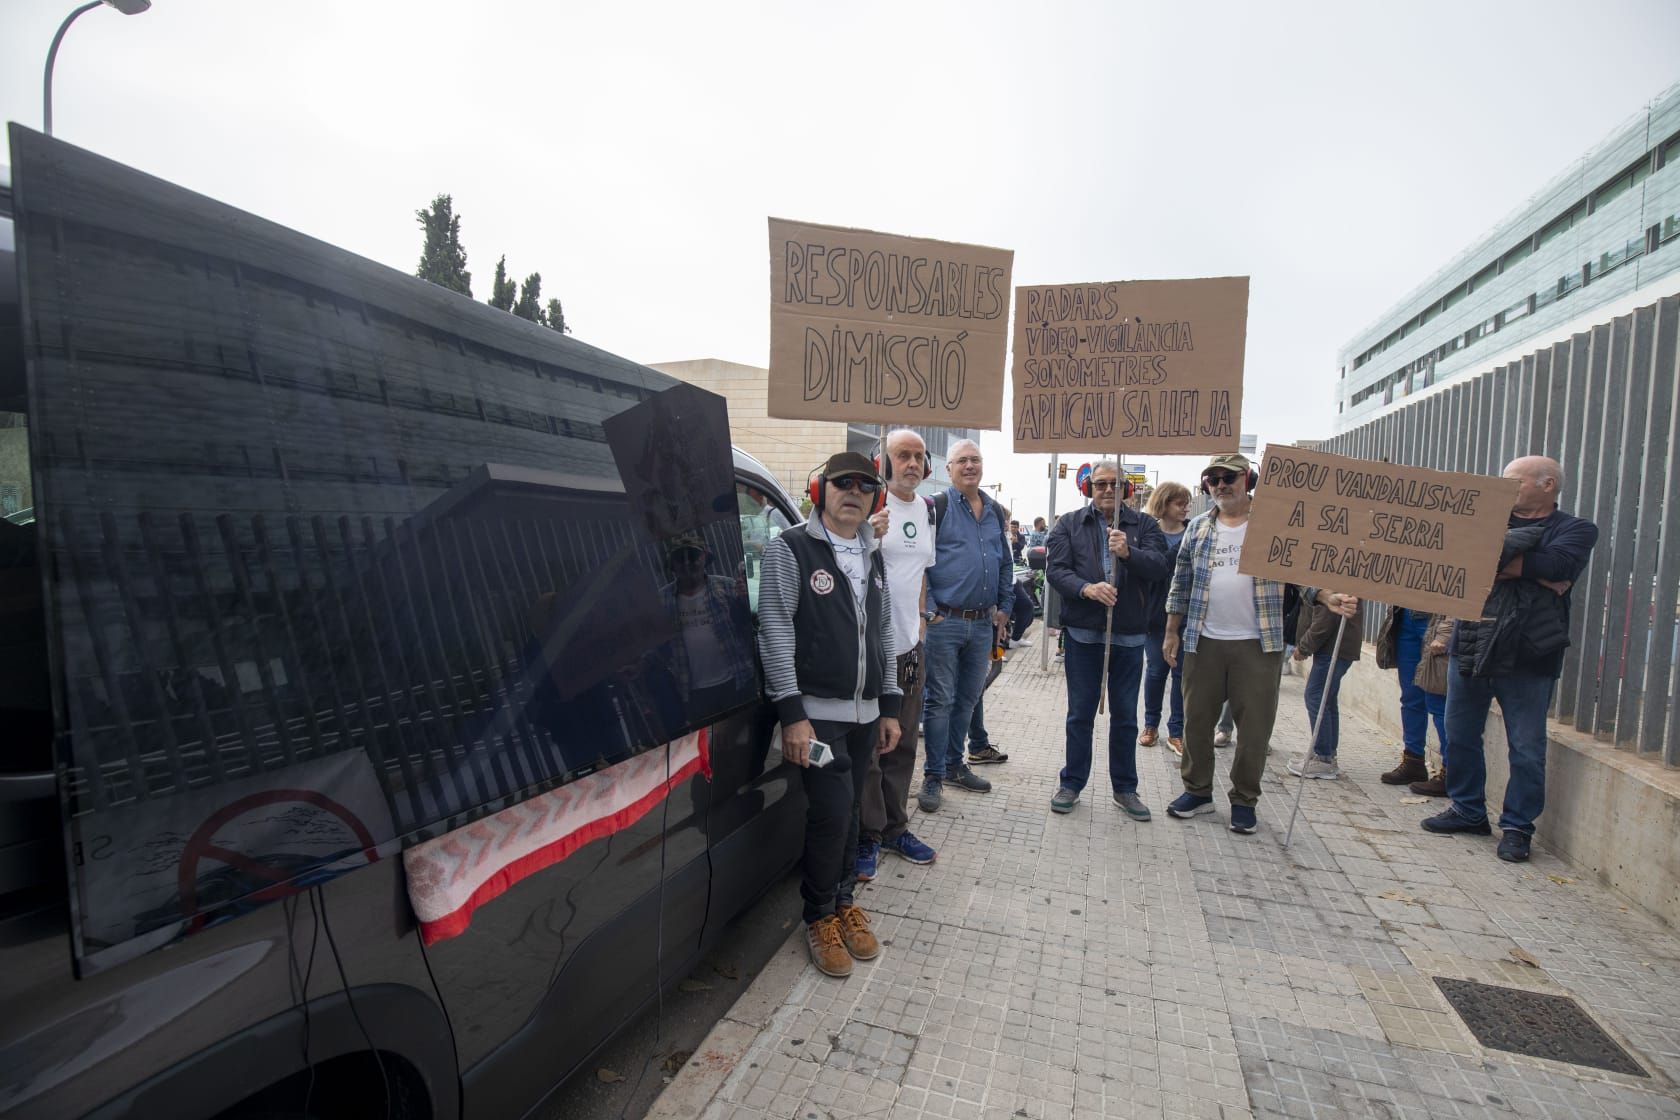 Fotos | La protesta de la plataforma de Indignats Ma-10 ante la DGT, en imágenes